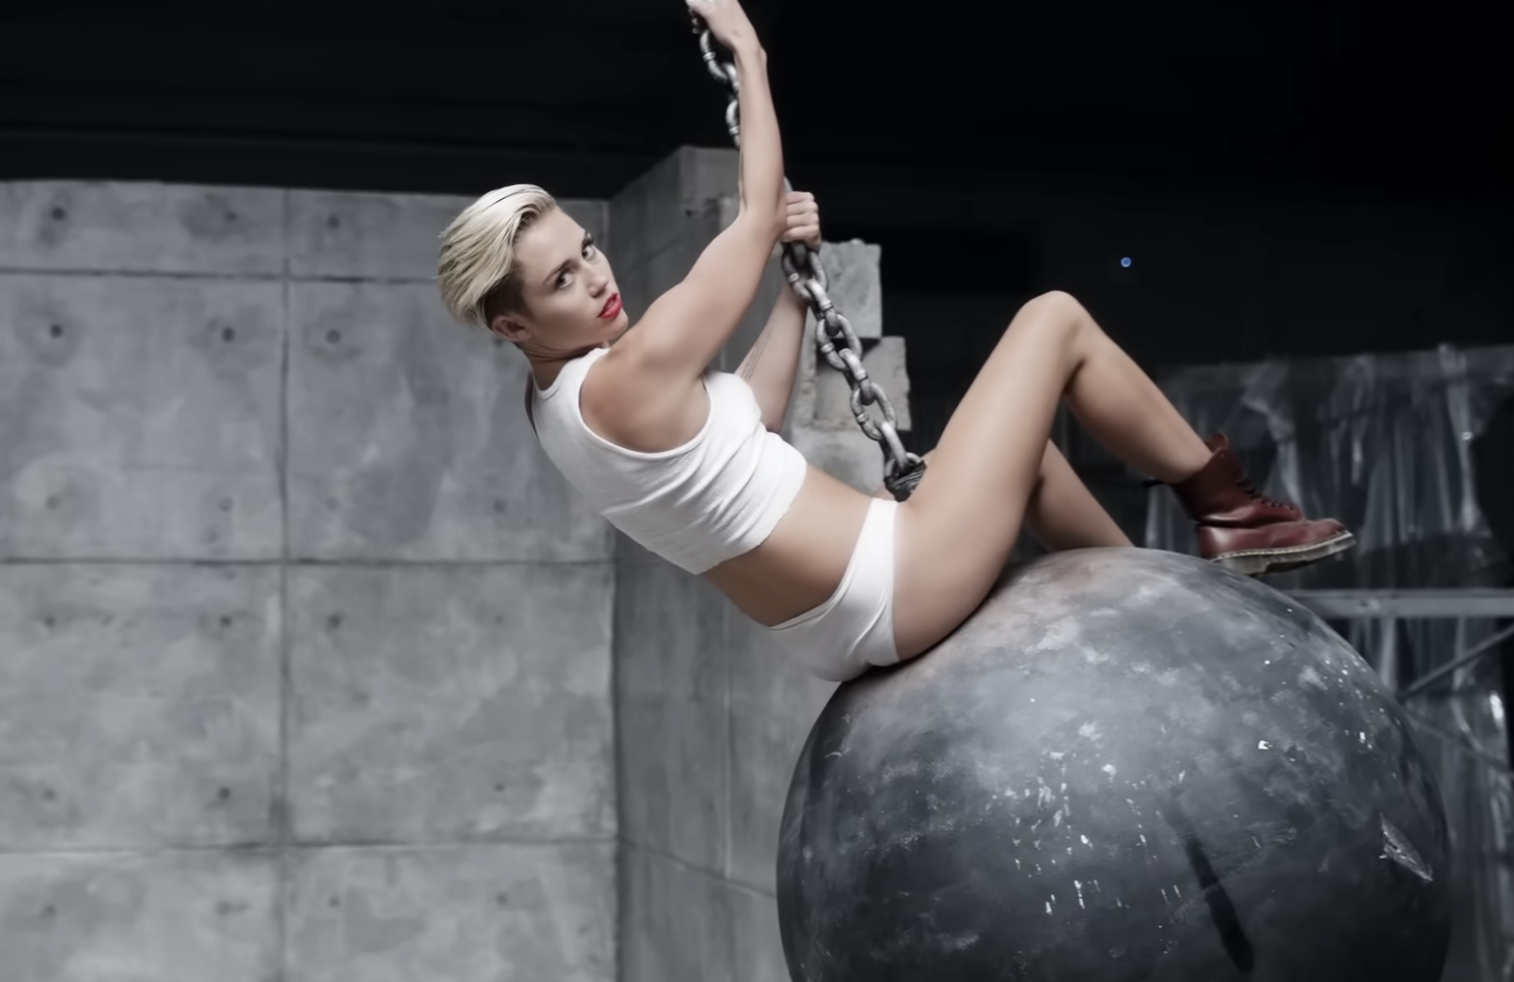 Miley riding a wrecking ball